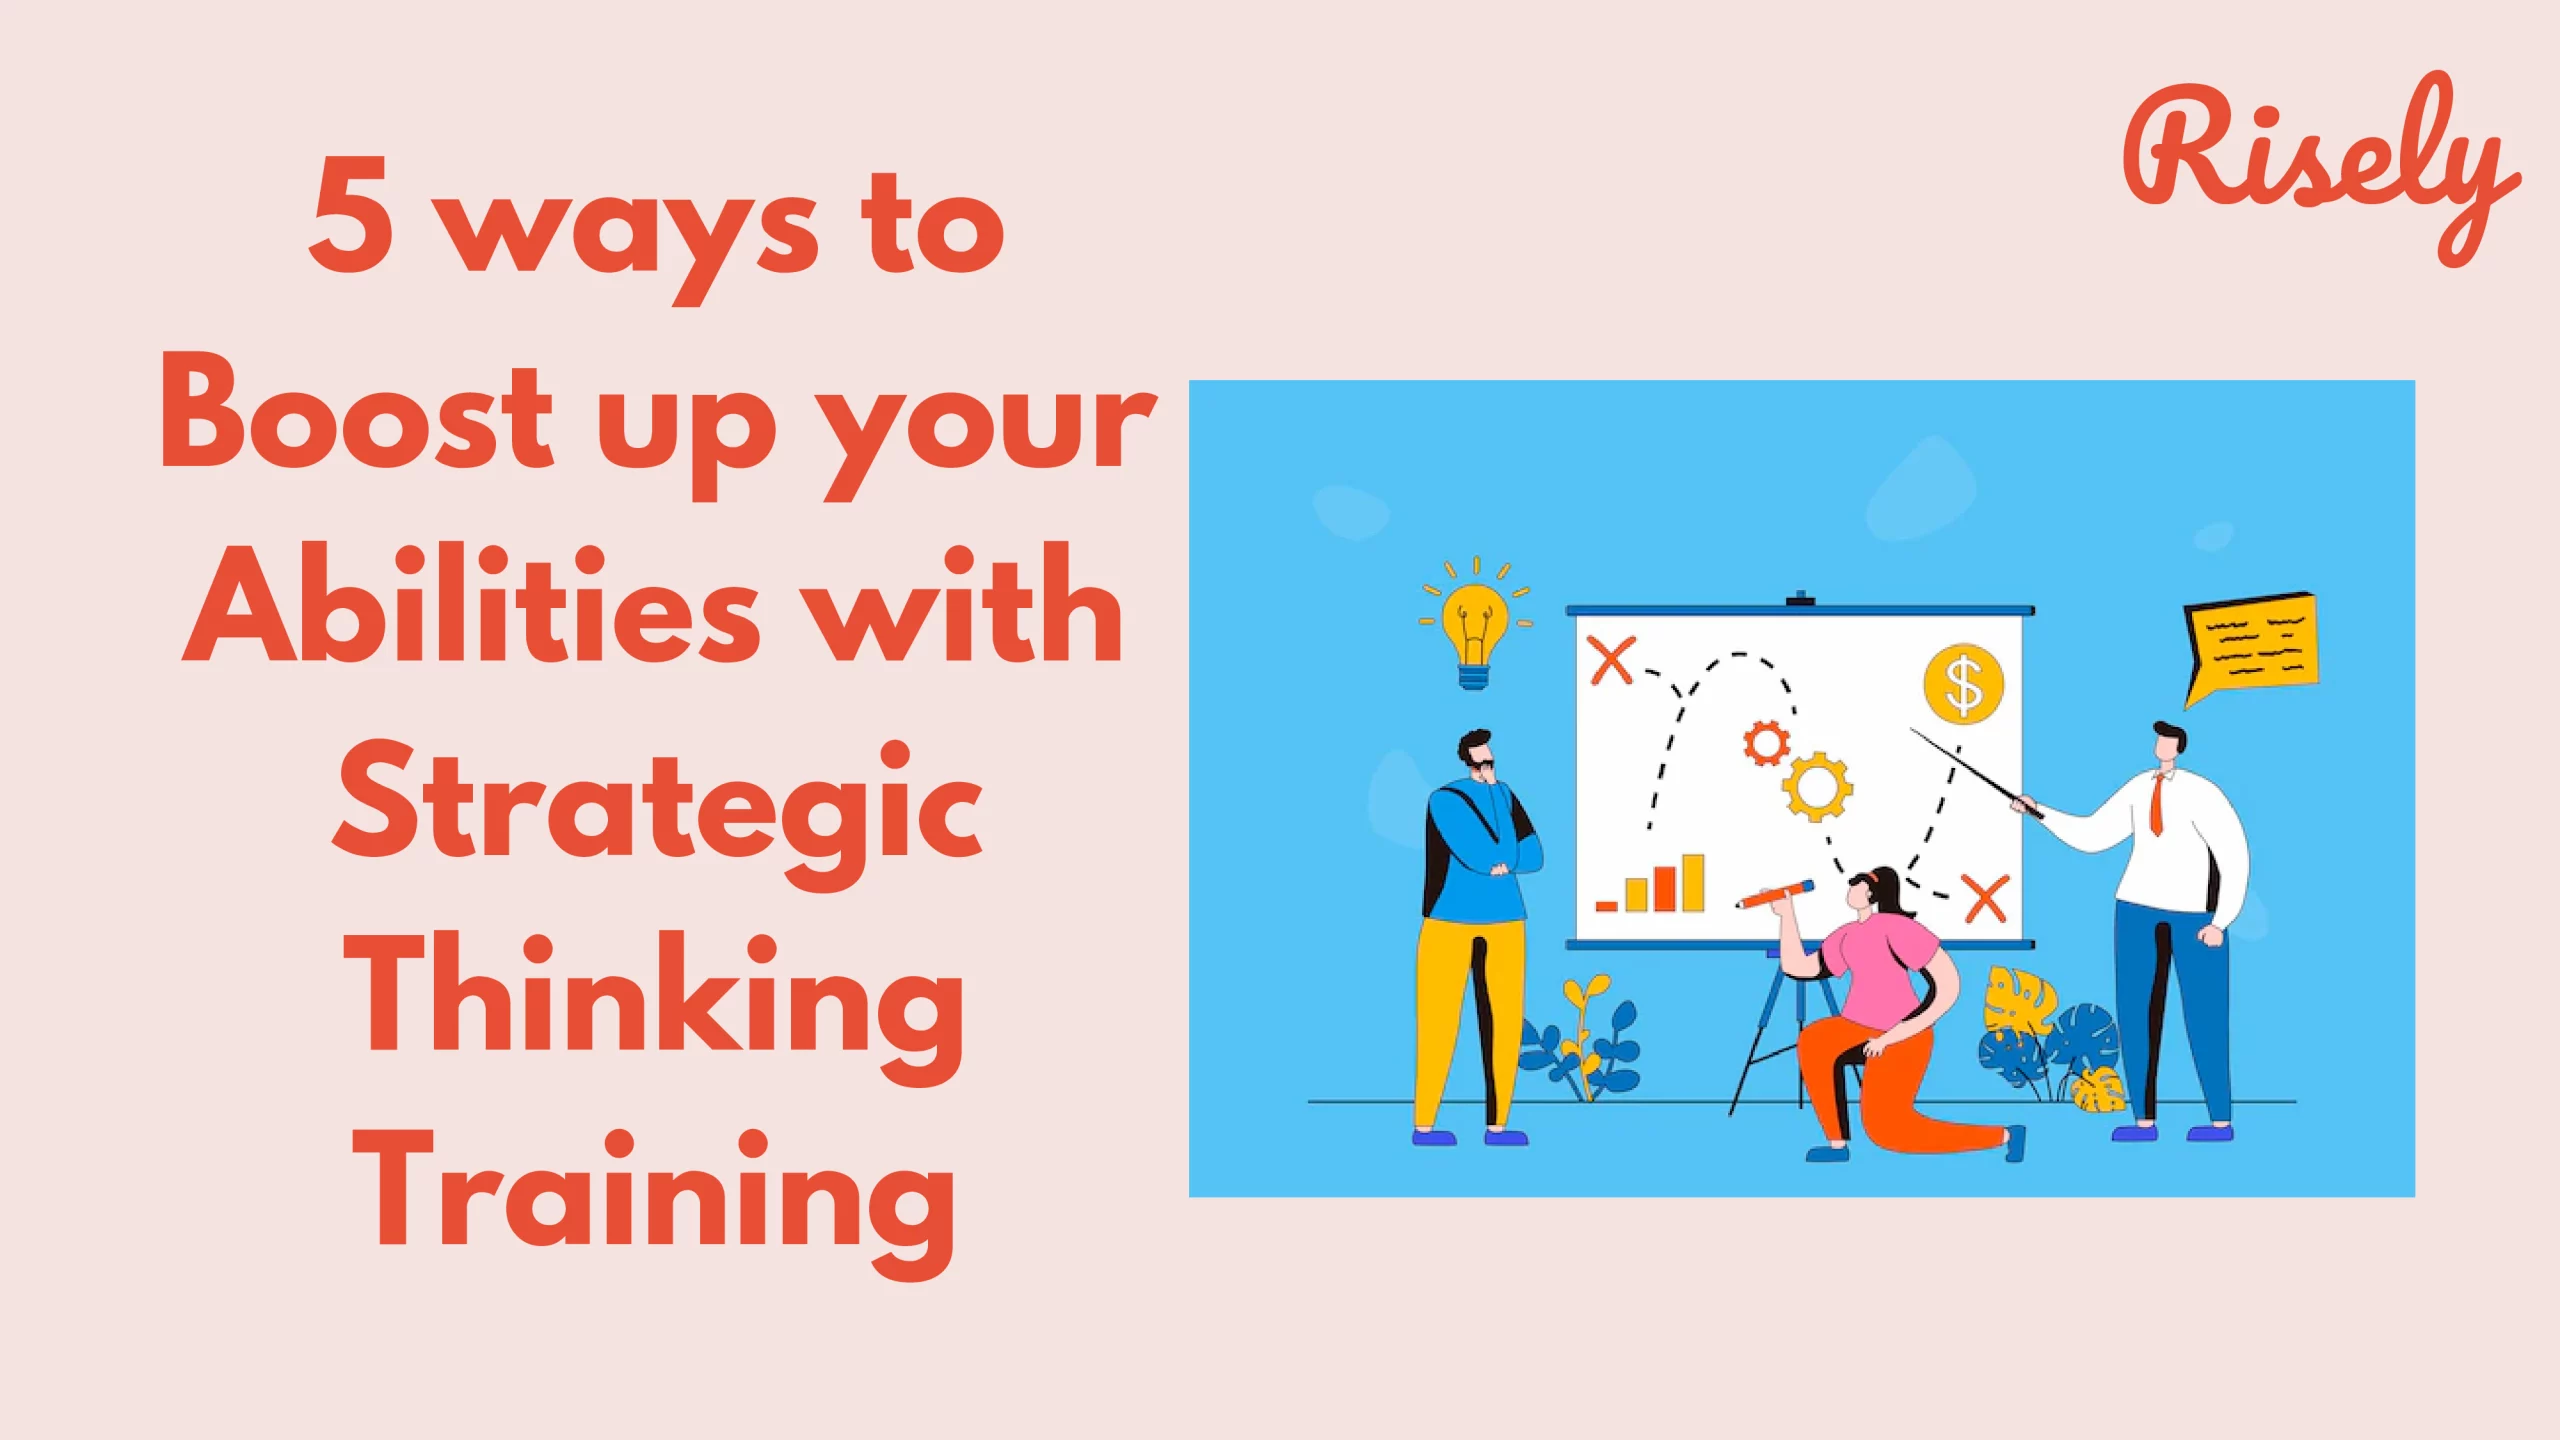 Strategic thinking training